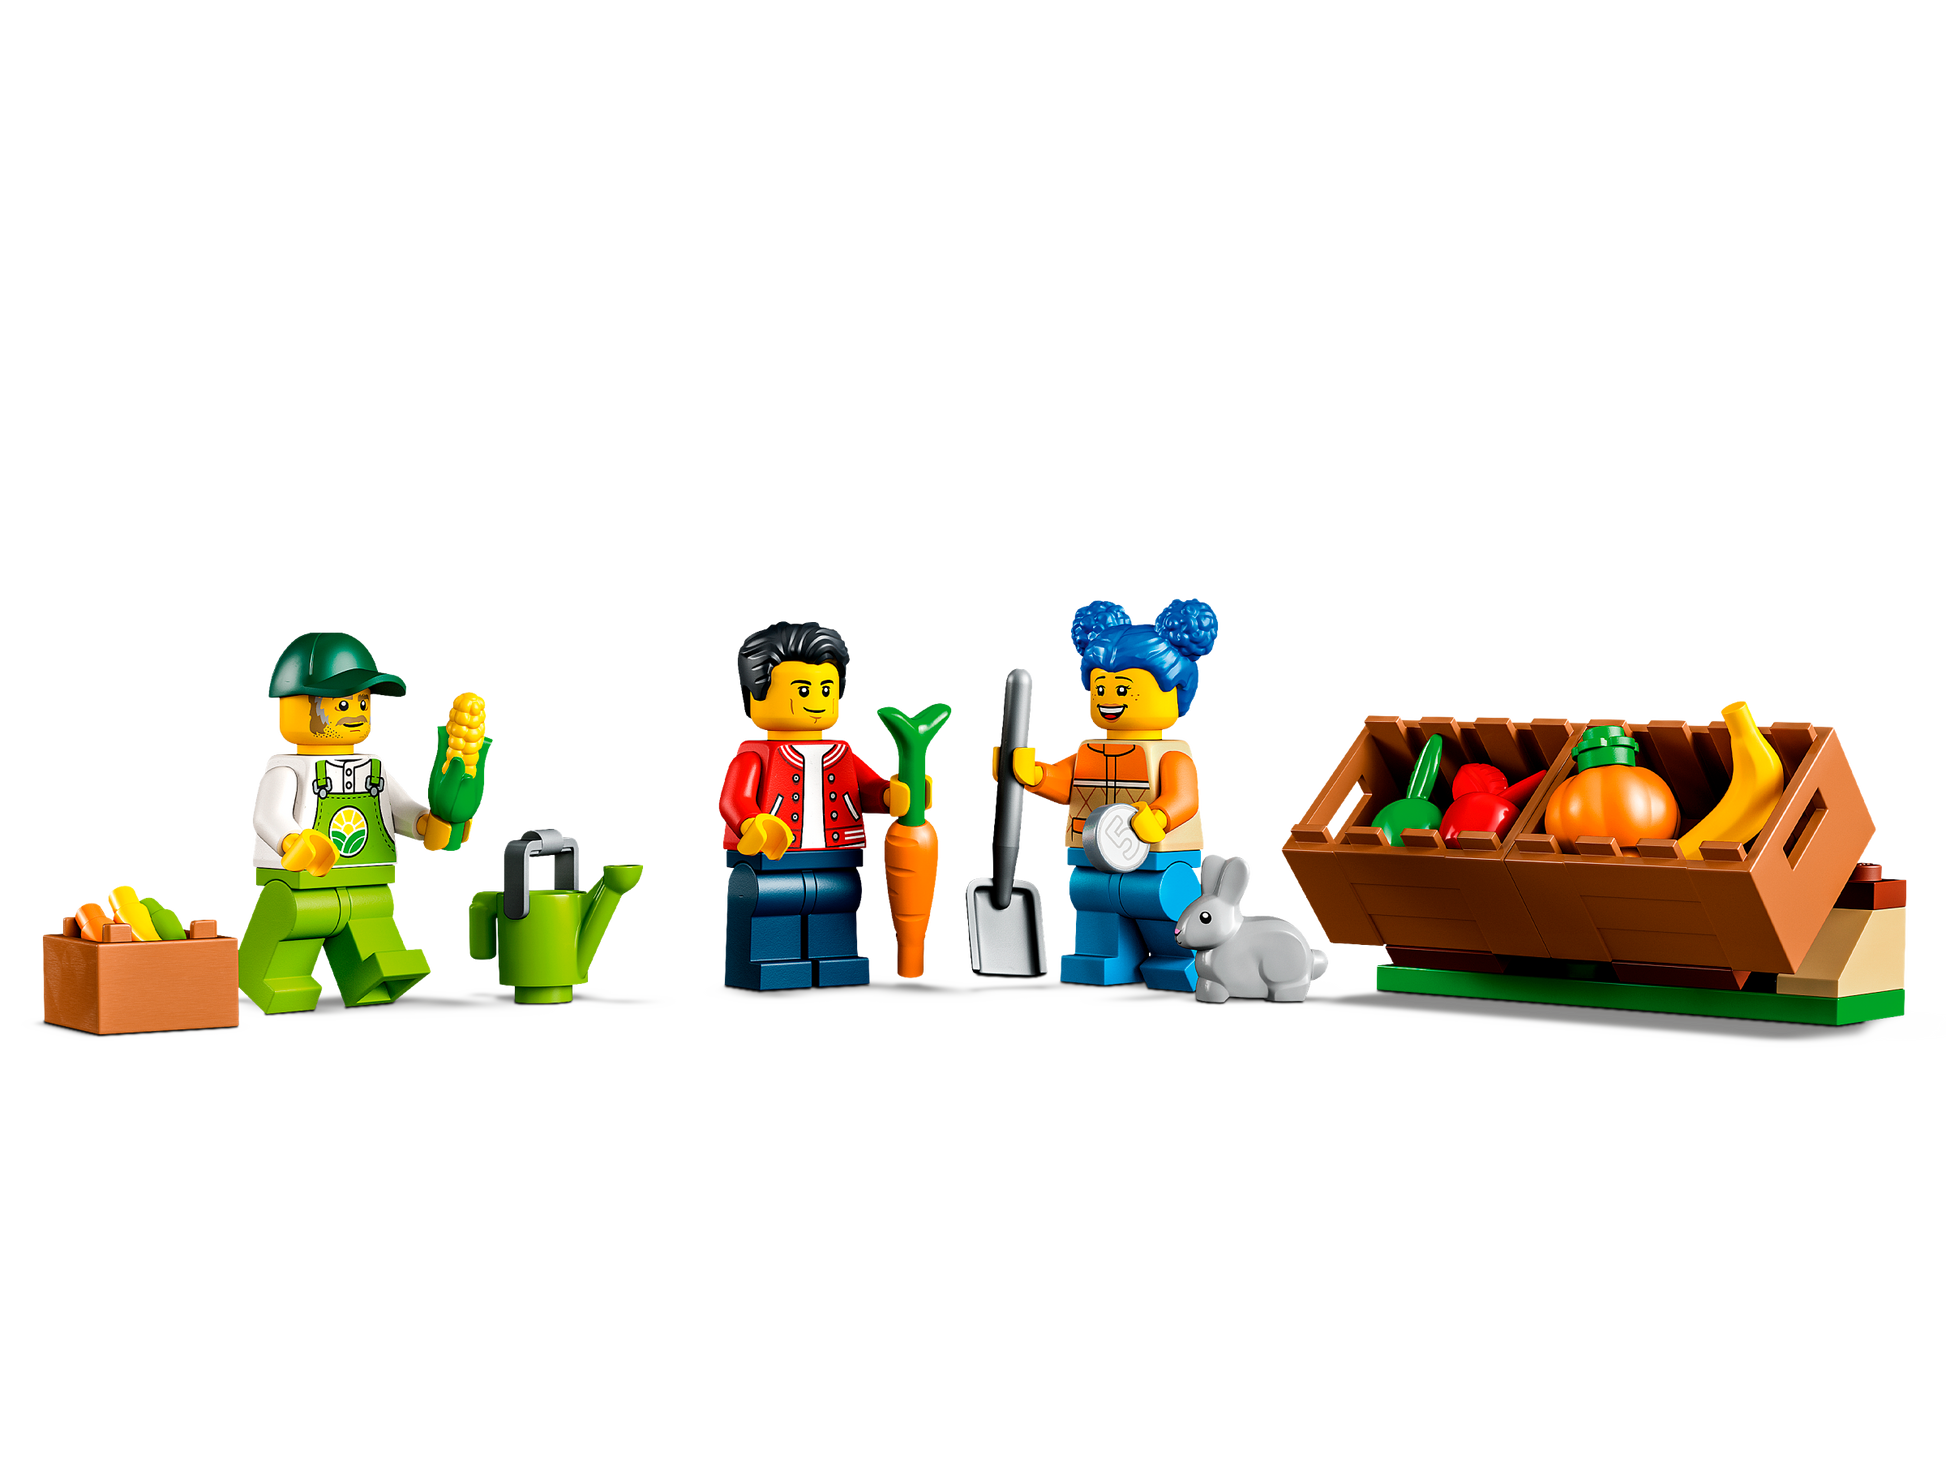 LEGO® set 60345